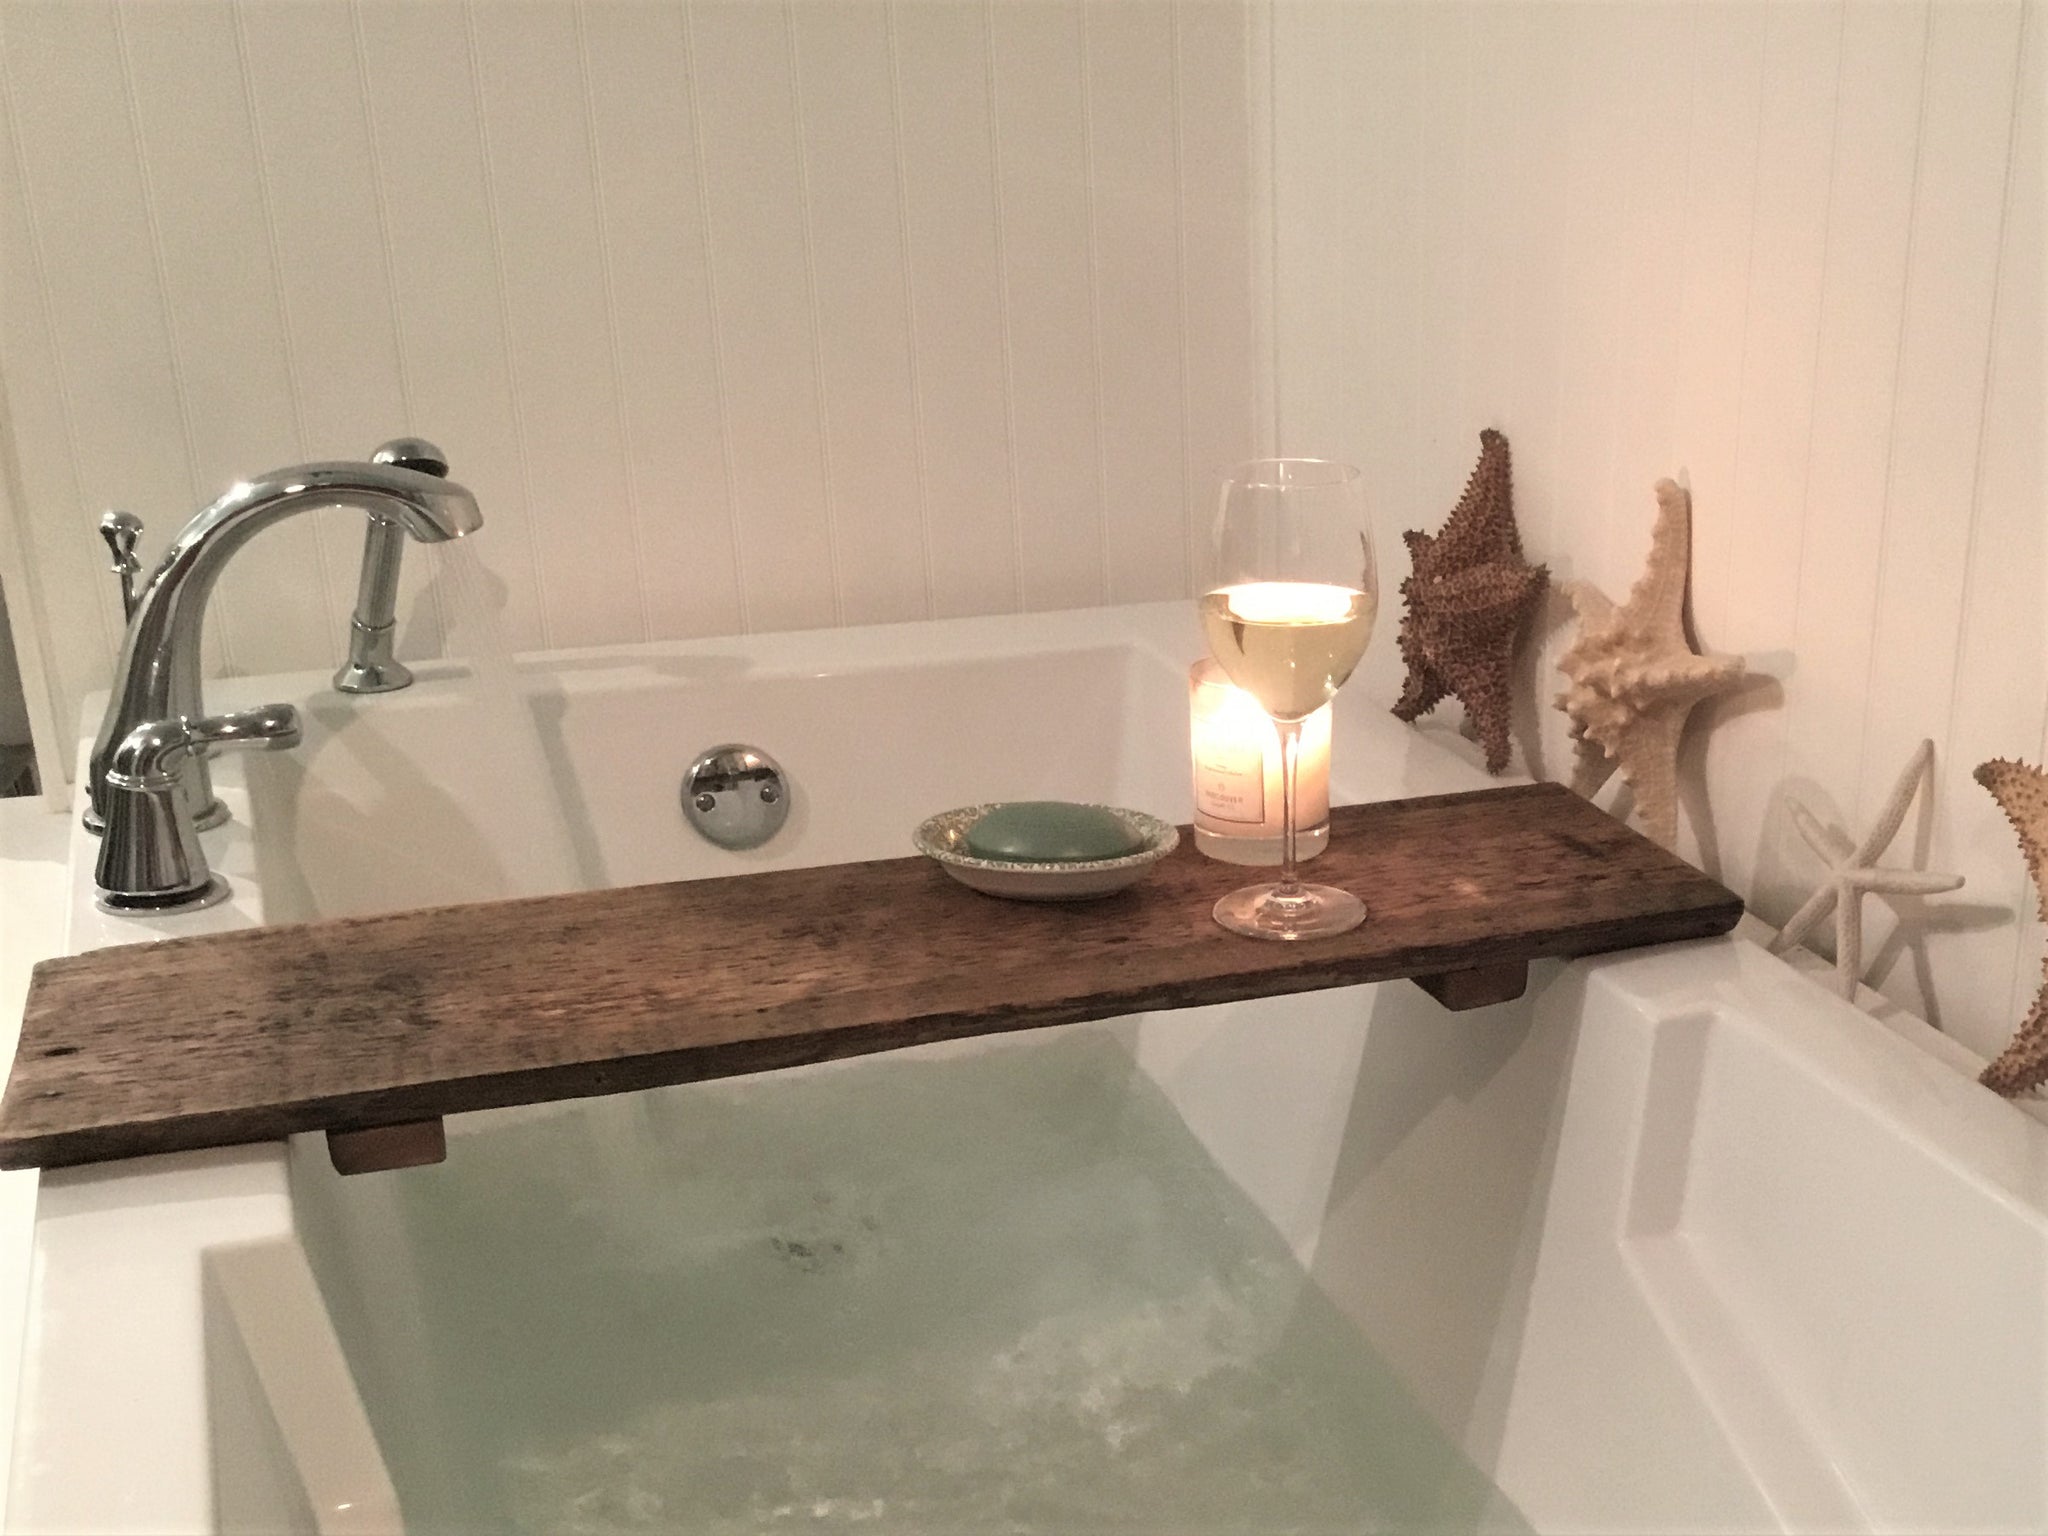 Bath Tray / Bath Tray Wood, Rustic Home Decor, Bath Tub Table